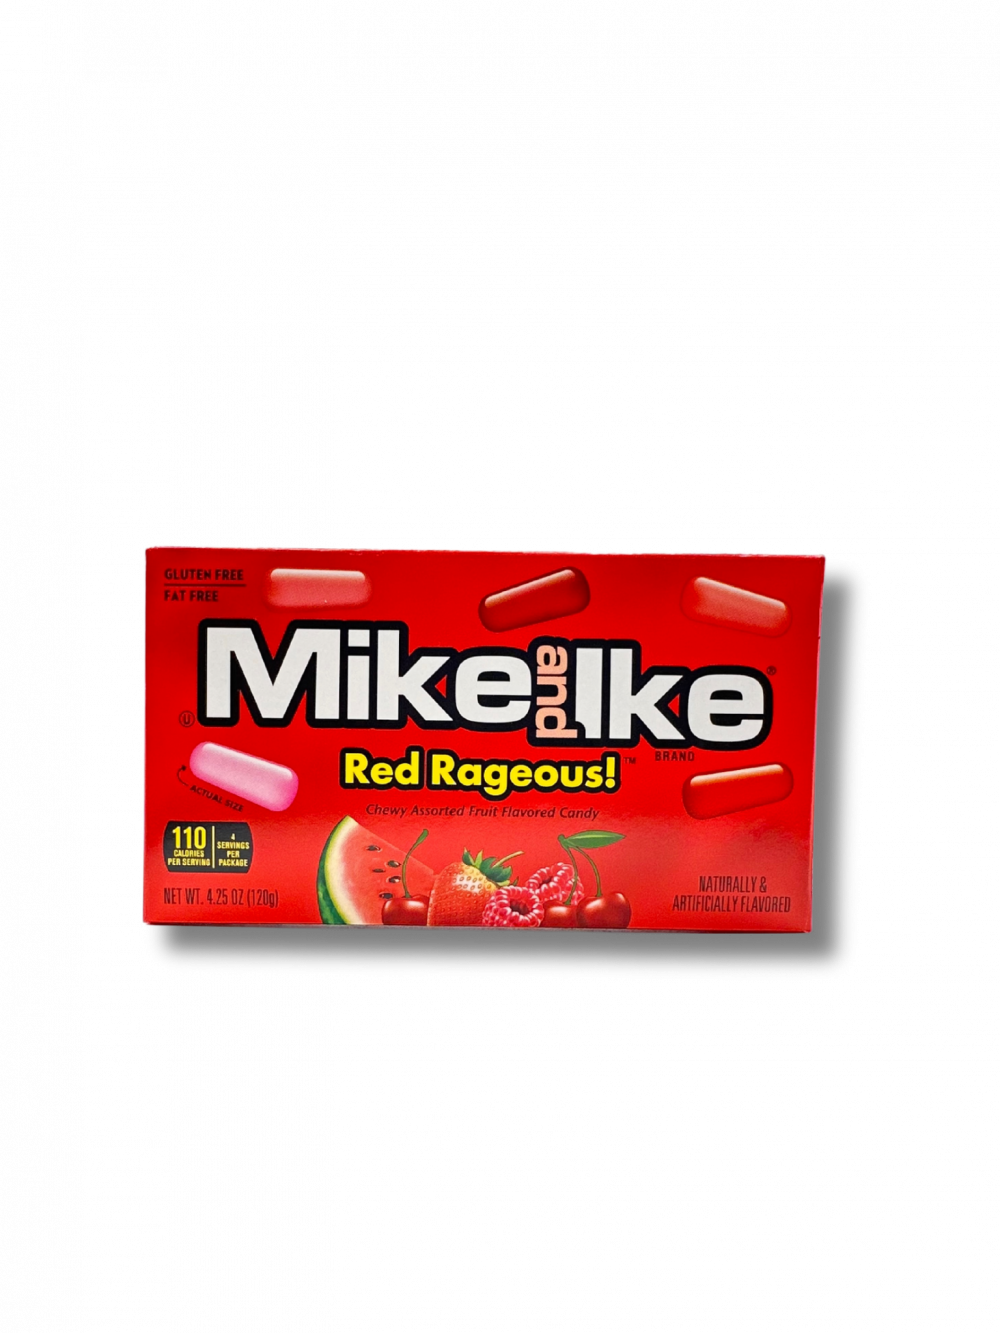 Tauche ein in die Leidenschaft von Mike and Ike Red Rageous! Diese intensiv roten Kaubonbonos bringen die perfekte Mischung aus süßen Erdbeeren, sauren Kirschen, Wassermelone und anderen verlockenden Früchten. Gönn dir den roten Rausch und erlebe eine Explosion fruchtiger Freude. […] - Breddas Hemp & Sweets Company Wuppertal